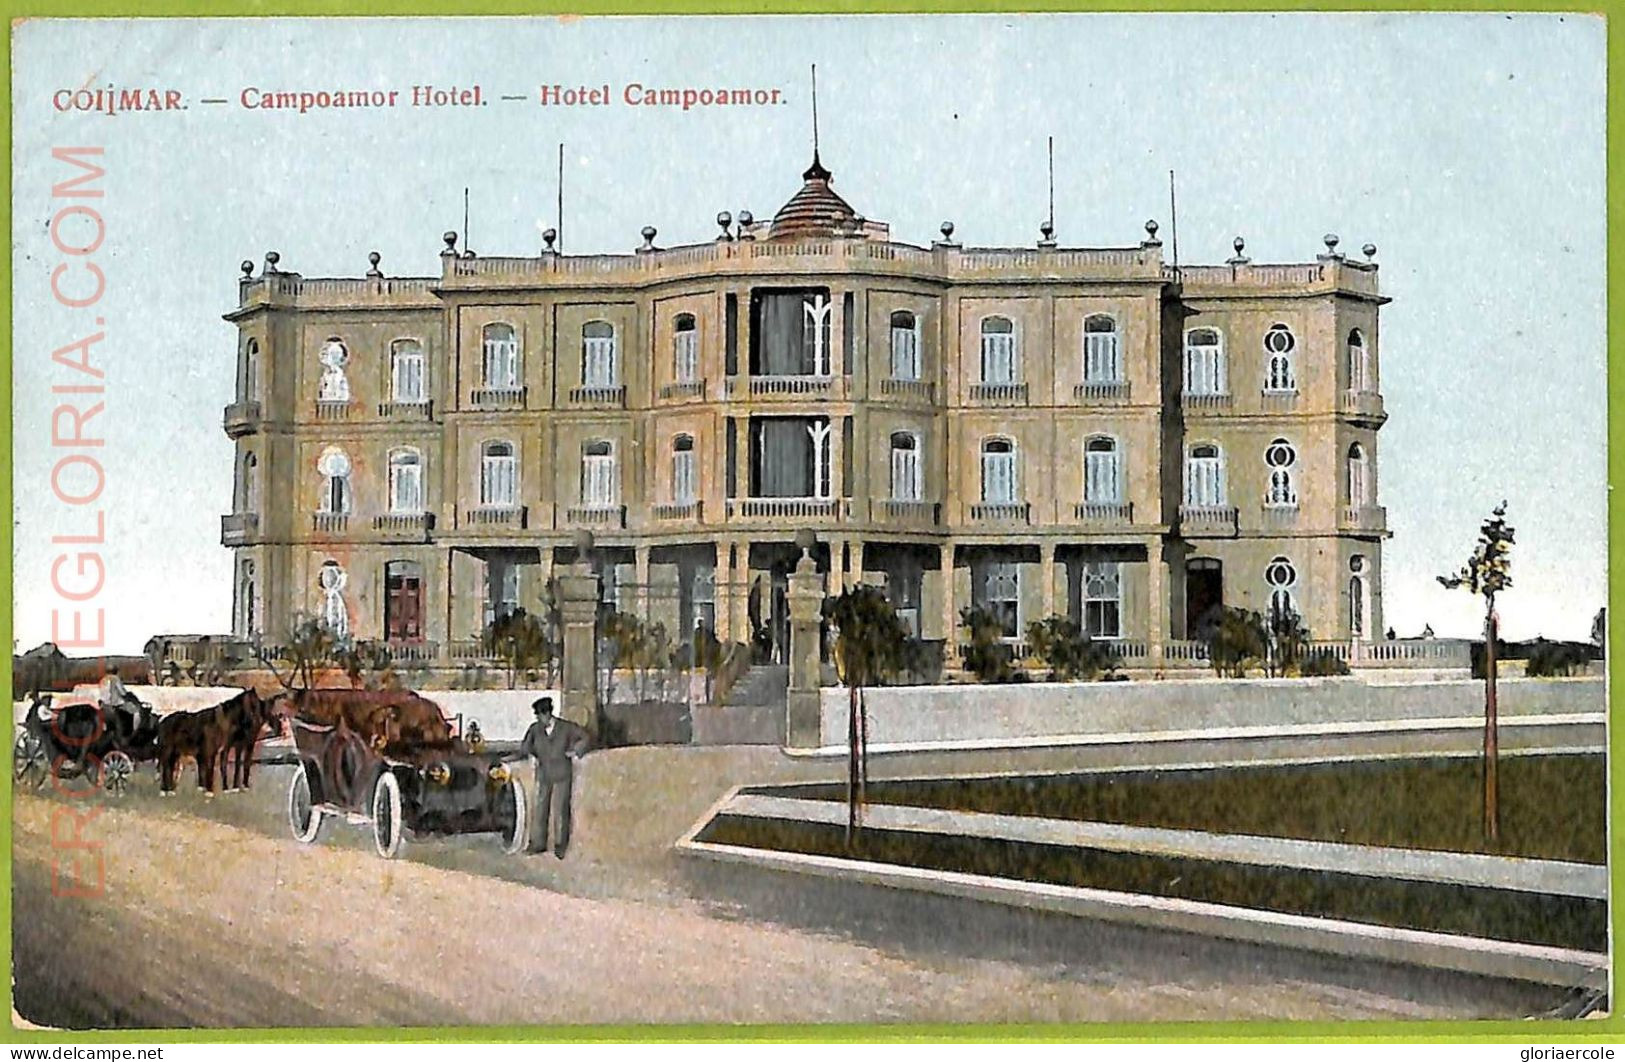 Aa6023 - CUBA - Vintage Postcard - Cojimar - Hotel Campoamor - 1909 - Cuba